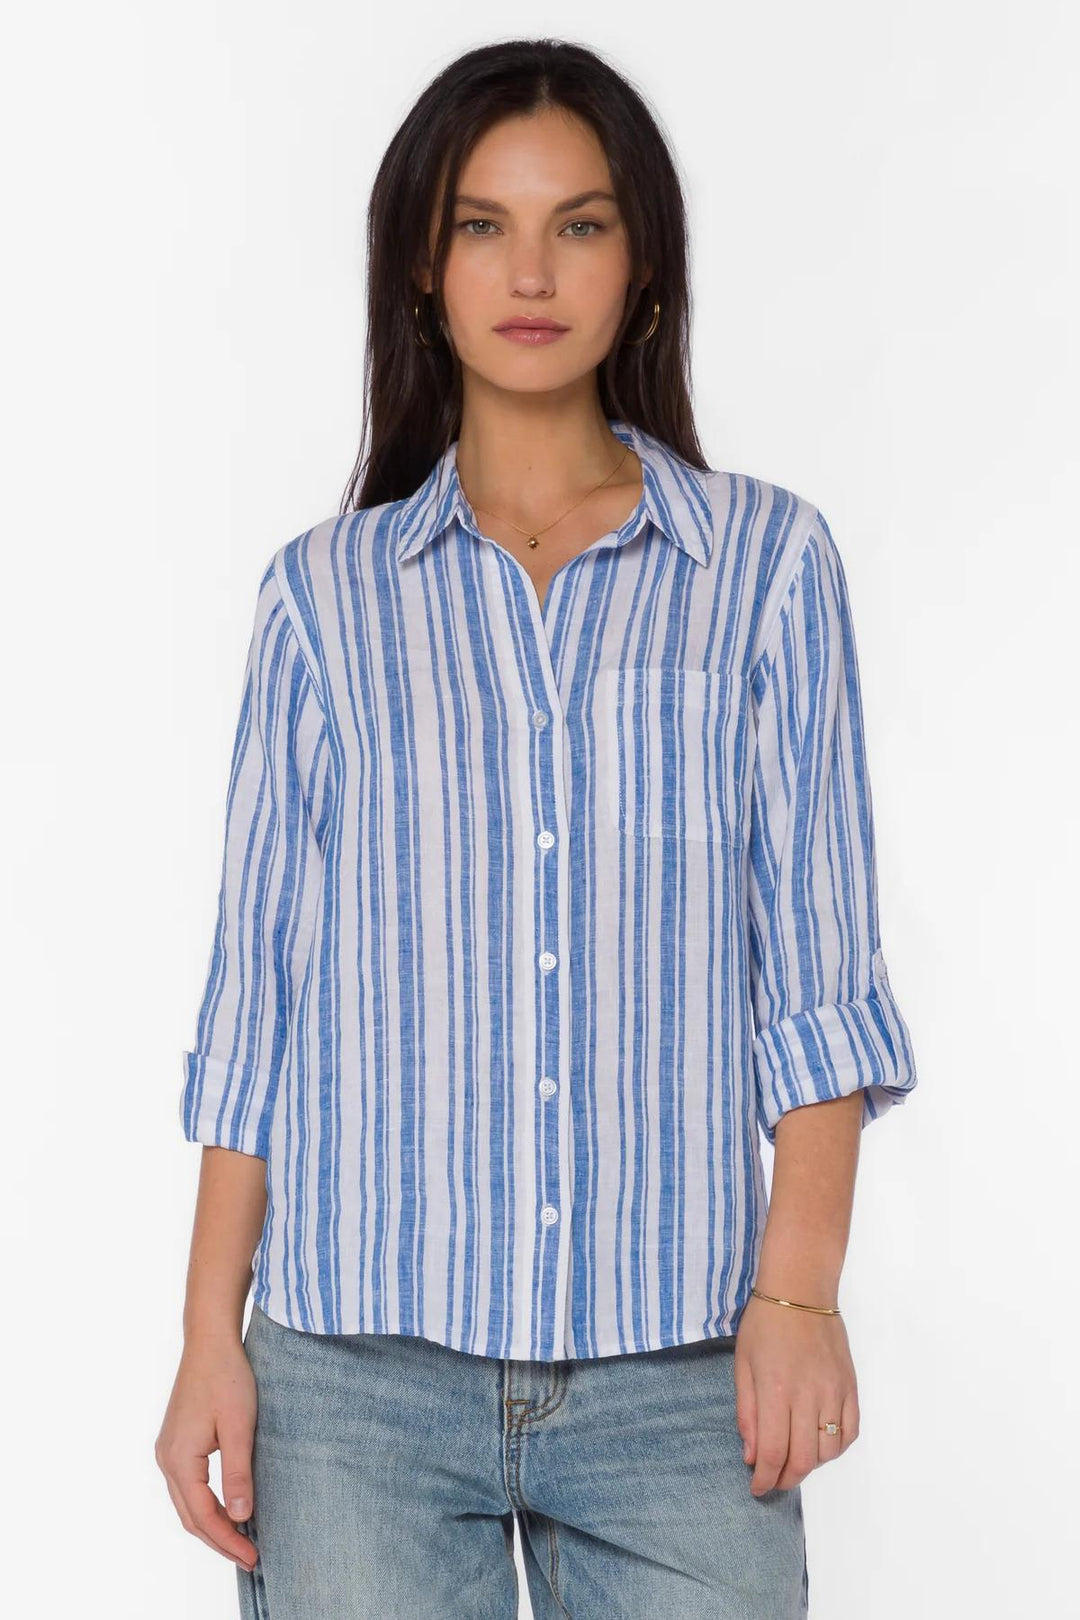 Jak & Rae Elisa Blue Stripe Shirt